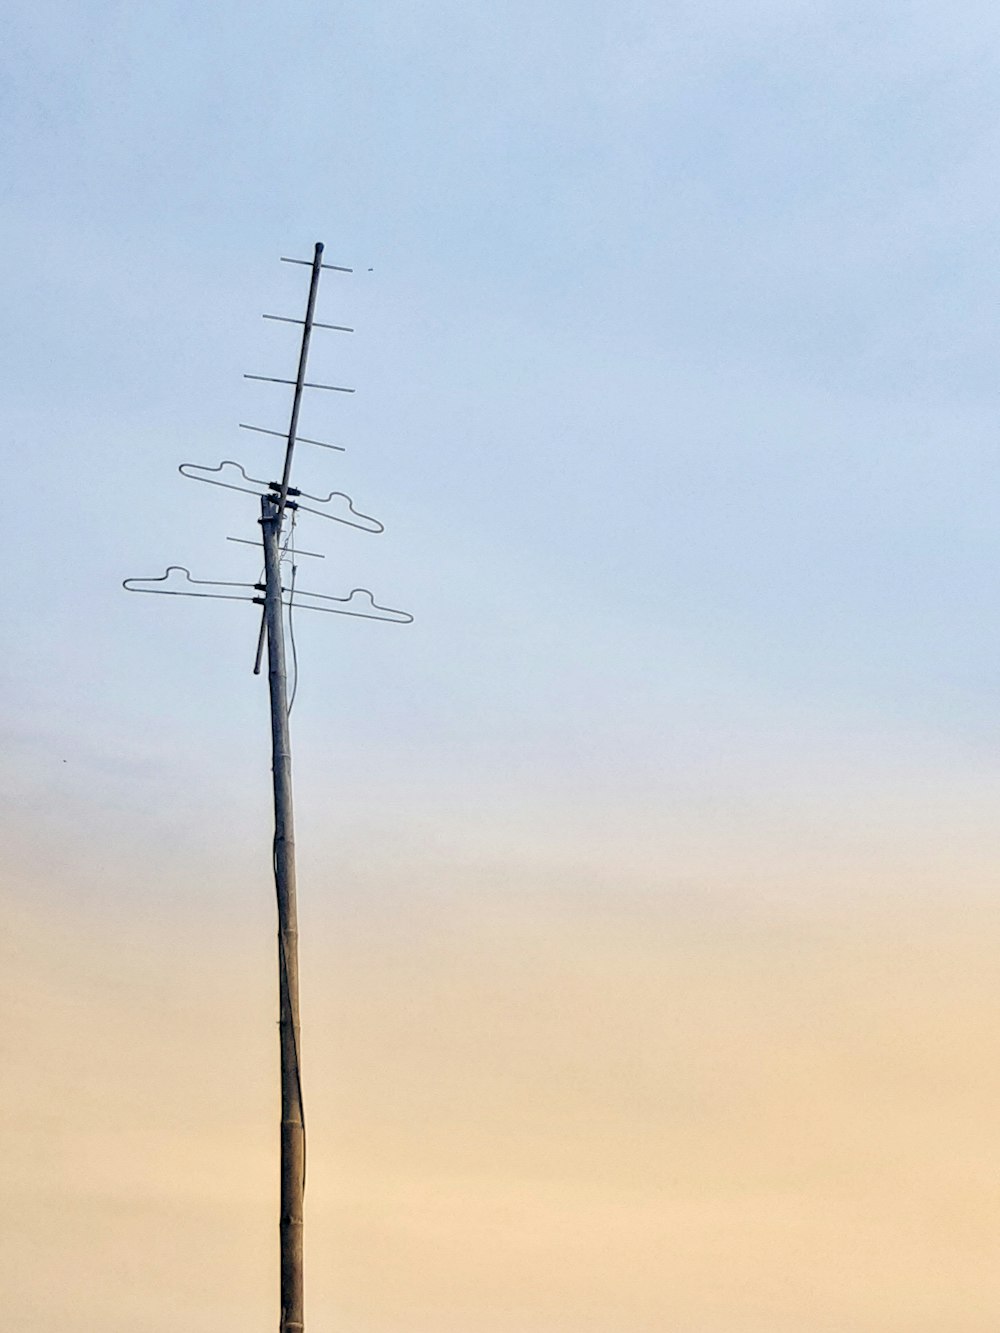 Un poste de madera alto con una antena de TV en la parte superior